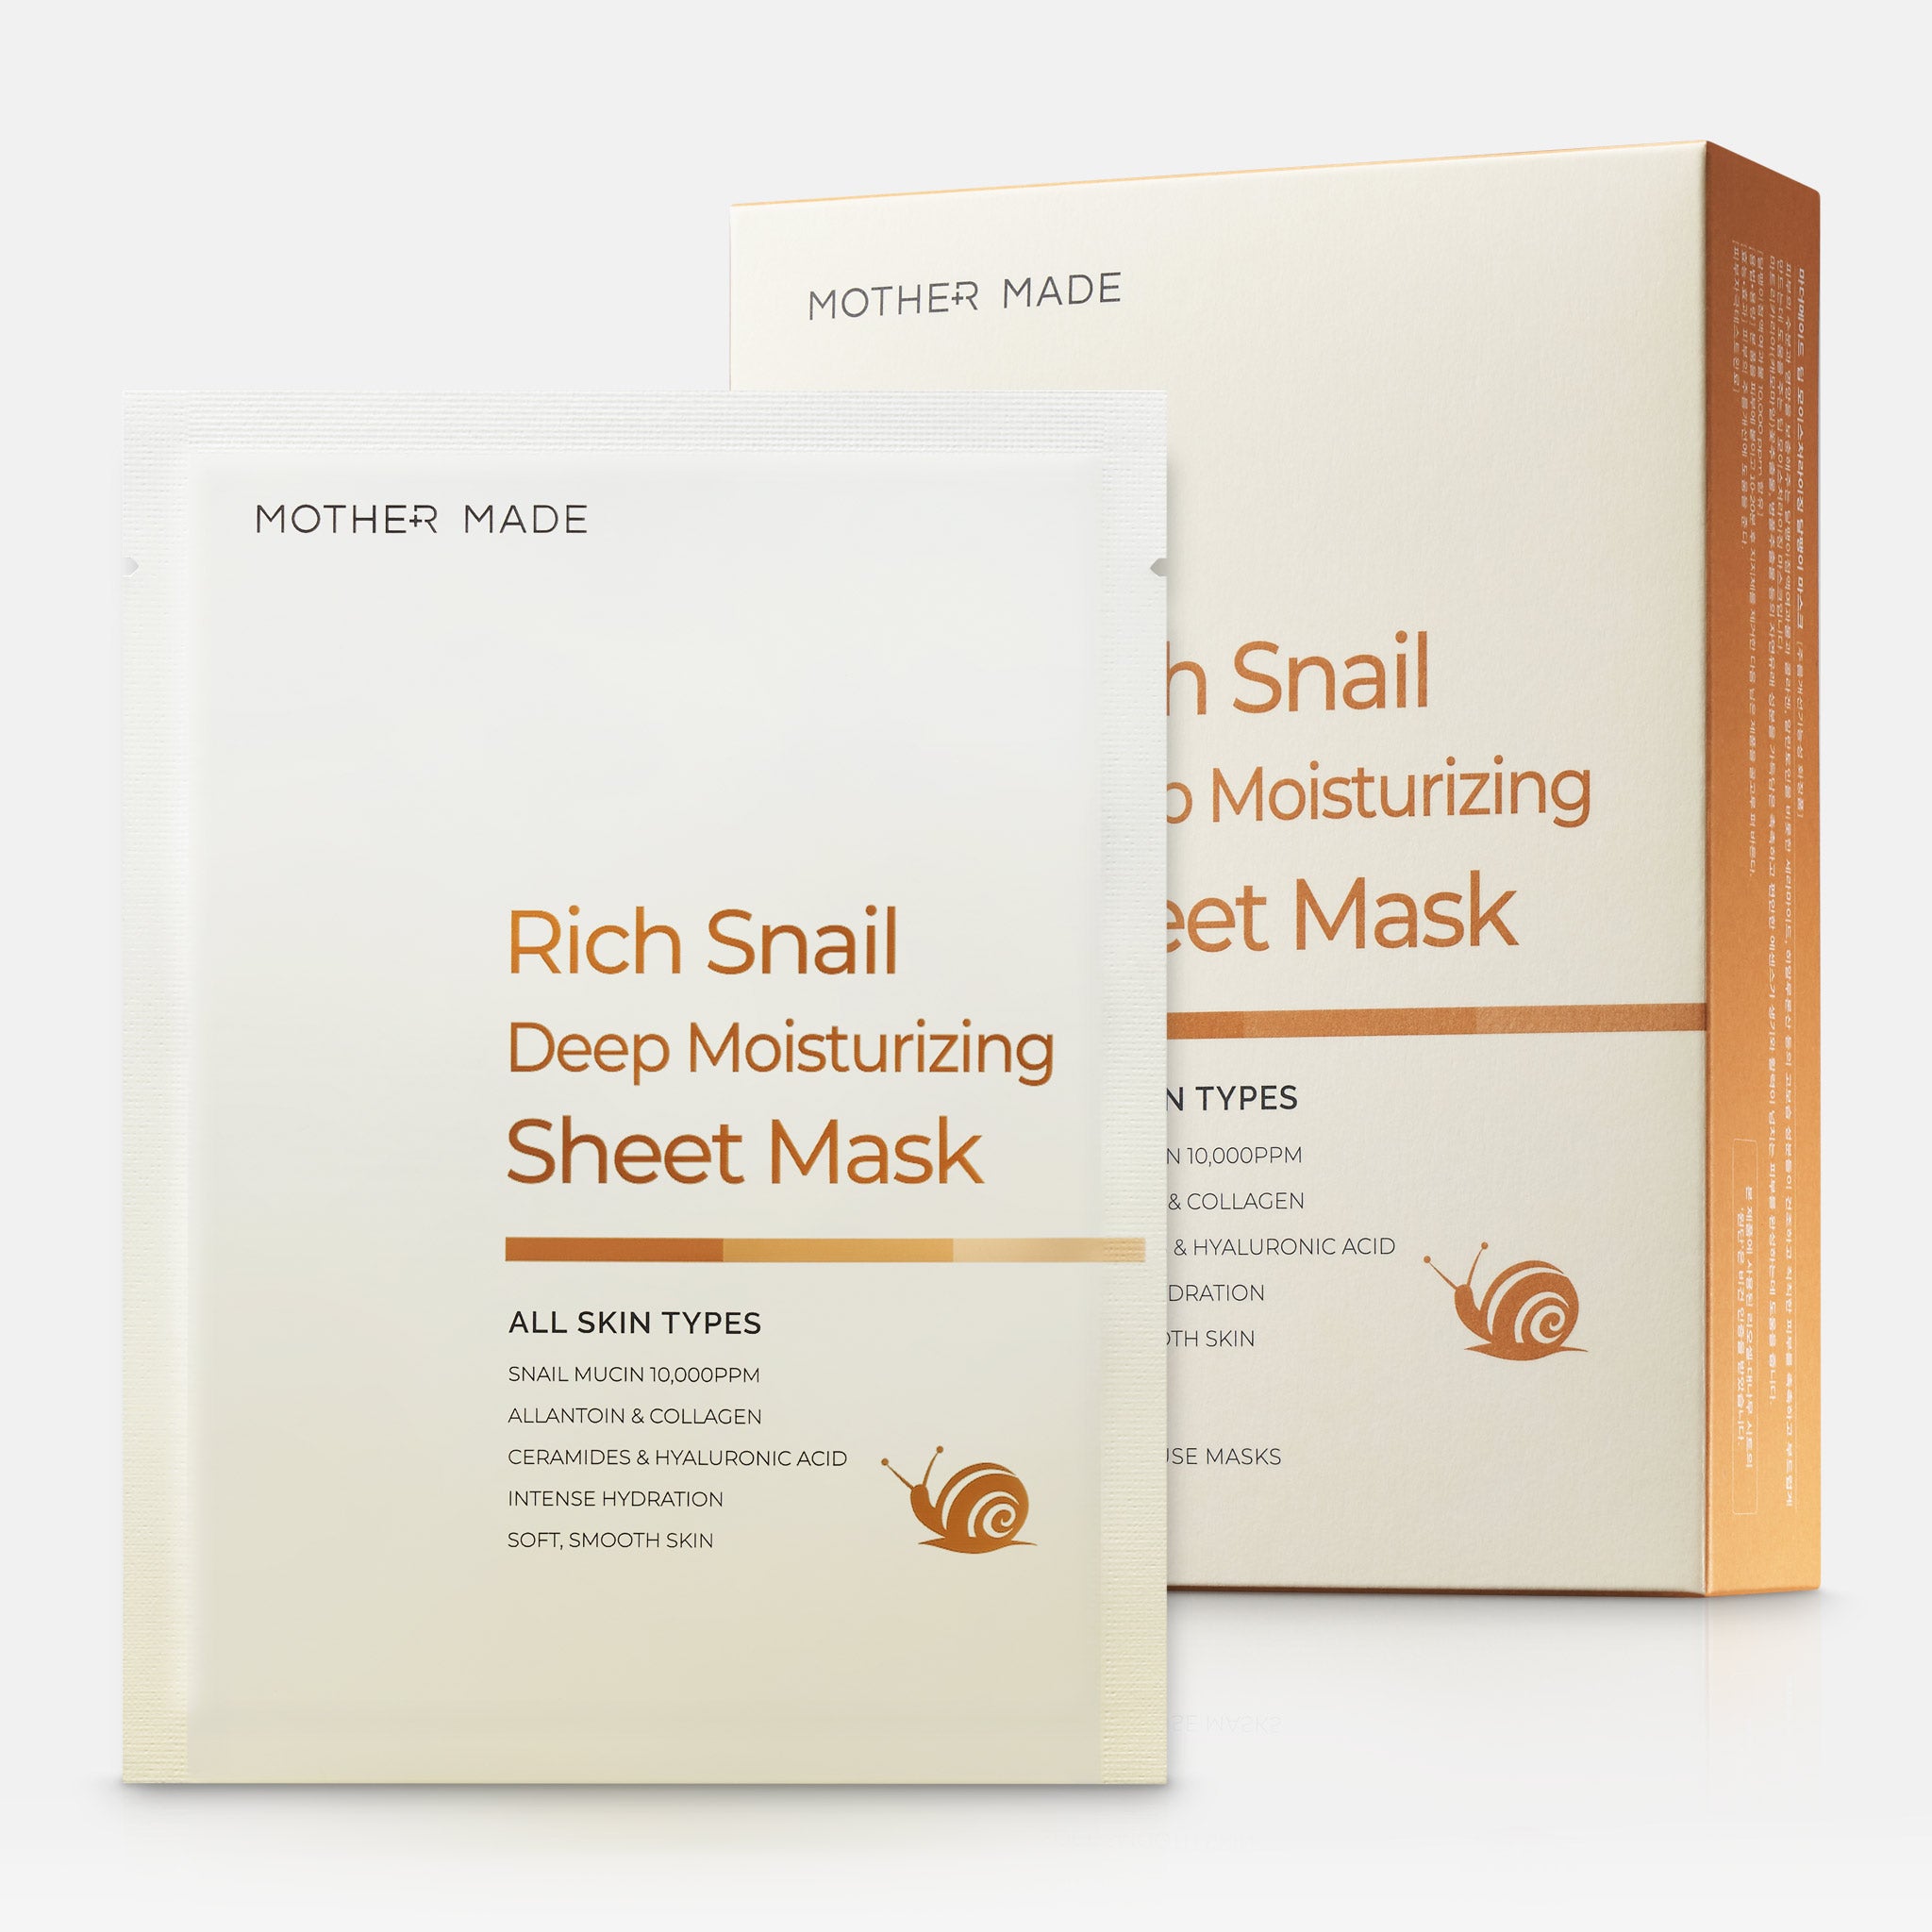 MOTHER MADE Rich Snail Deep Moisturizing Sheet Mask